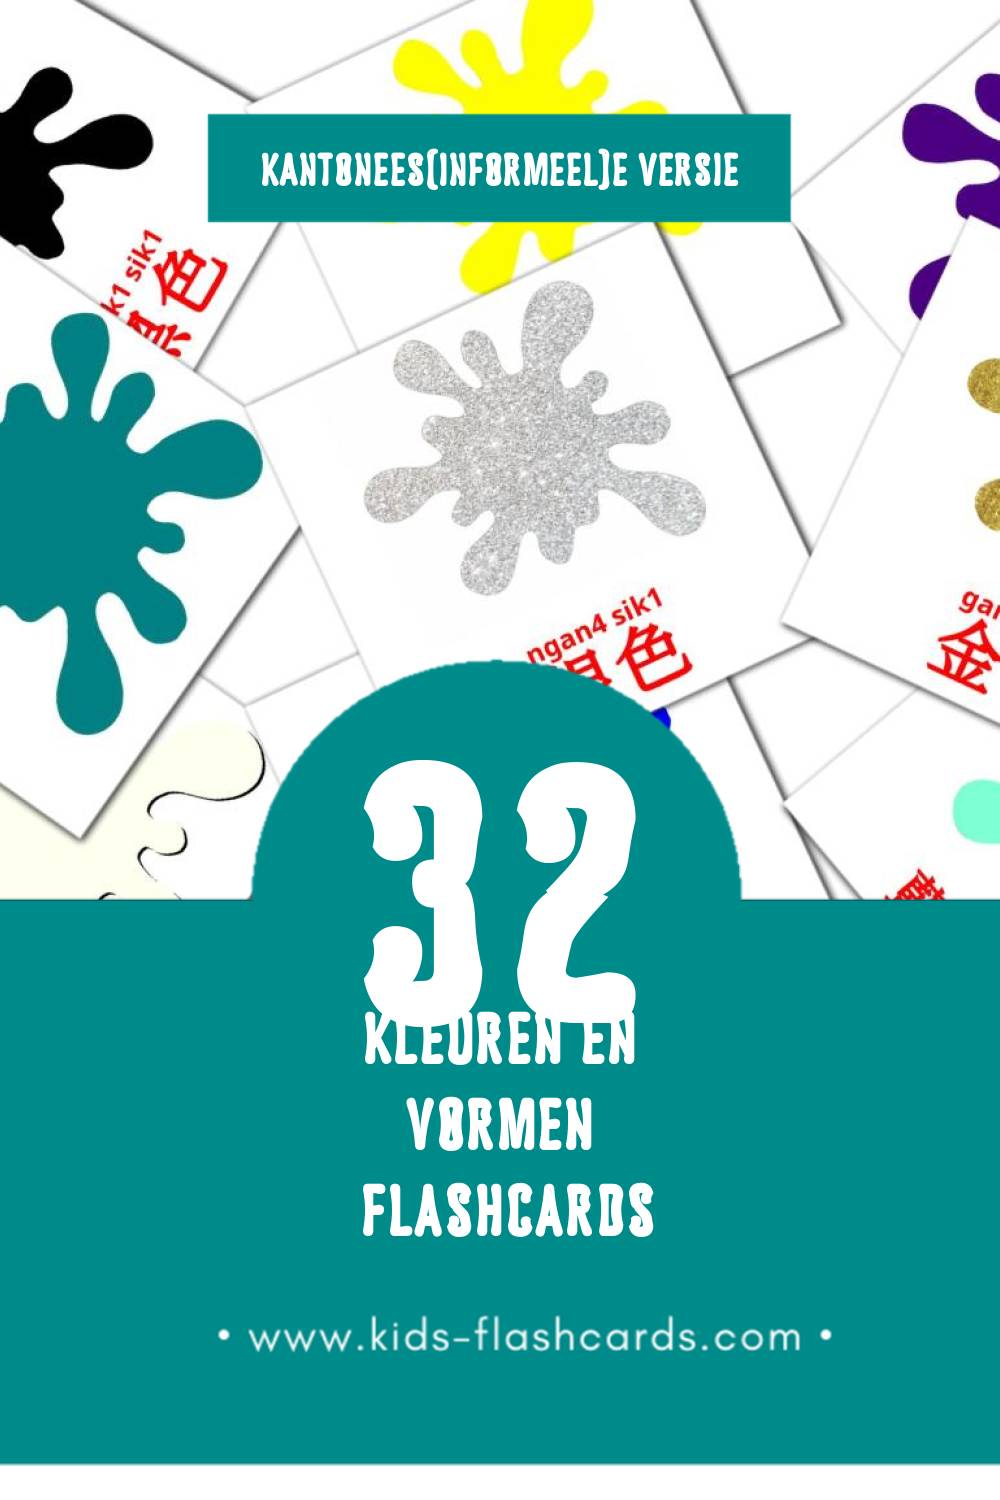 Visuele 形式和颜色 Flashcards voor Kleuters (32 kaarten in het Kantonees(informeel))